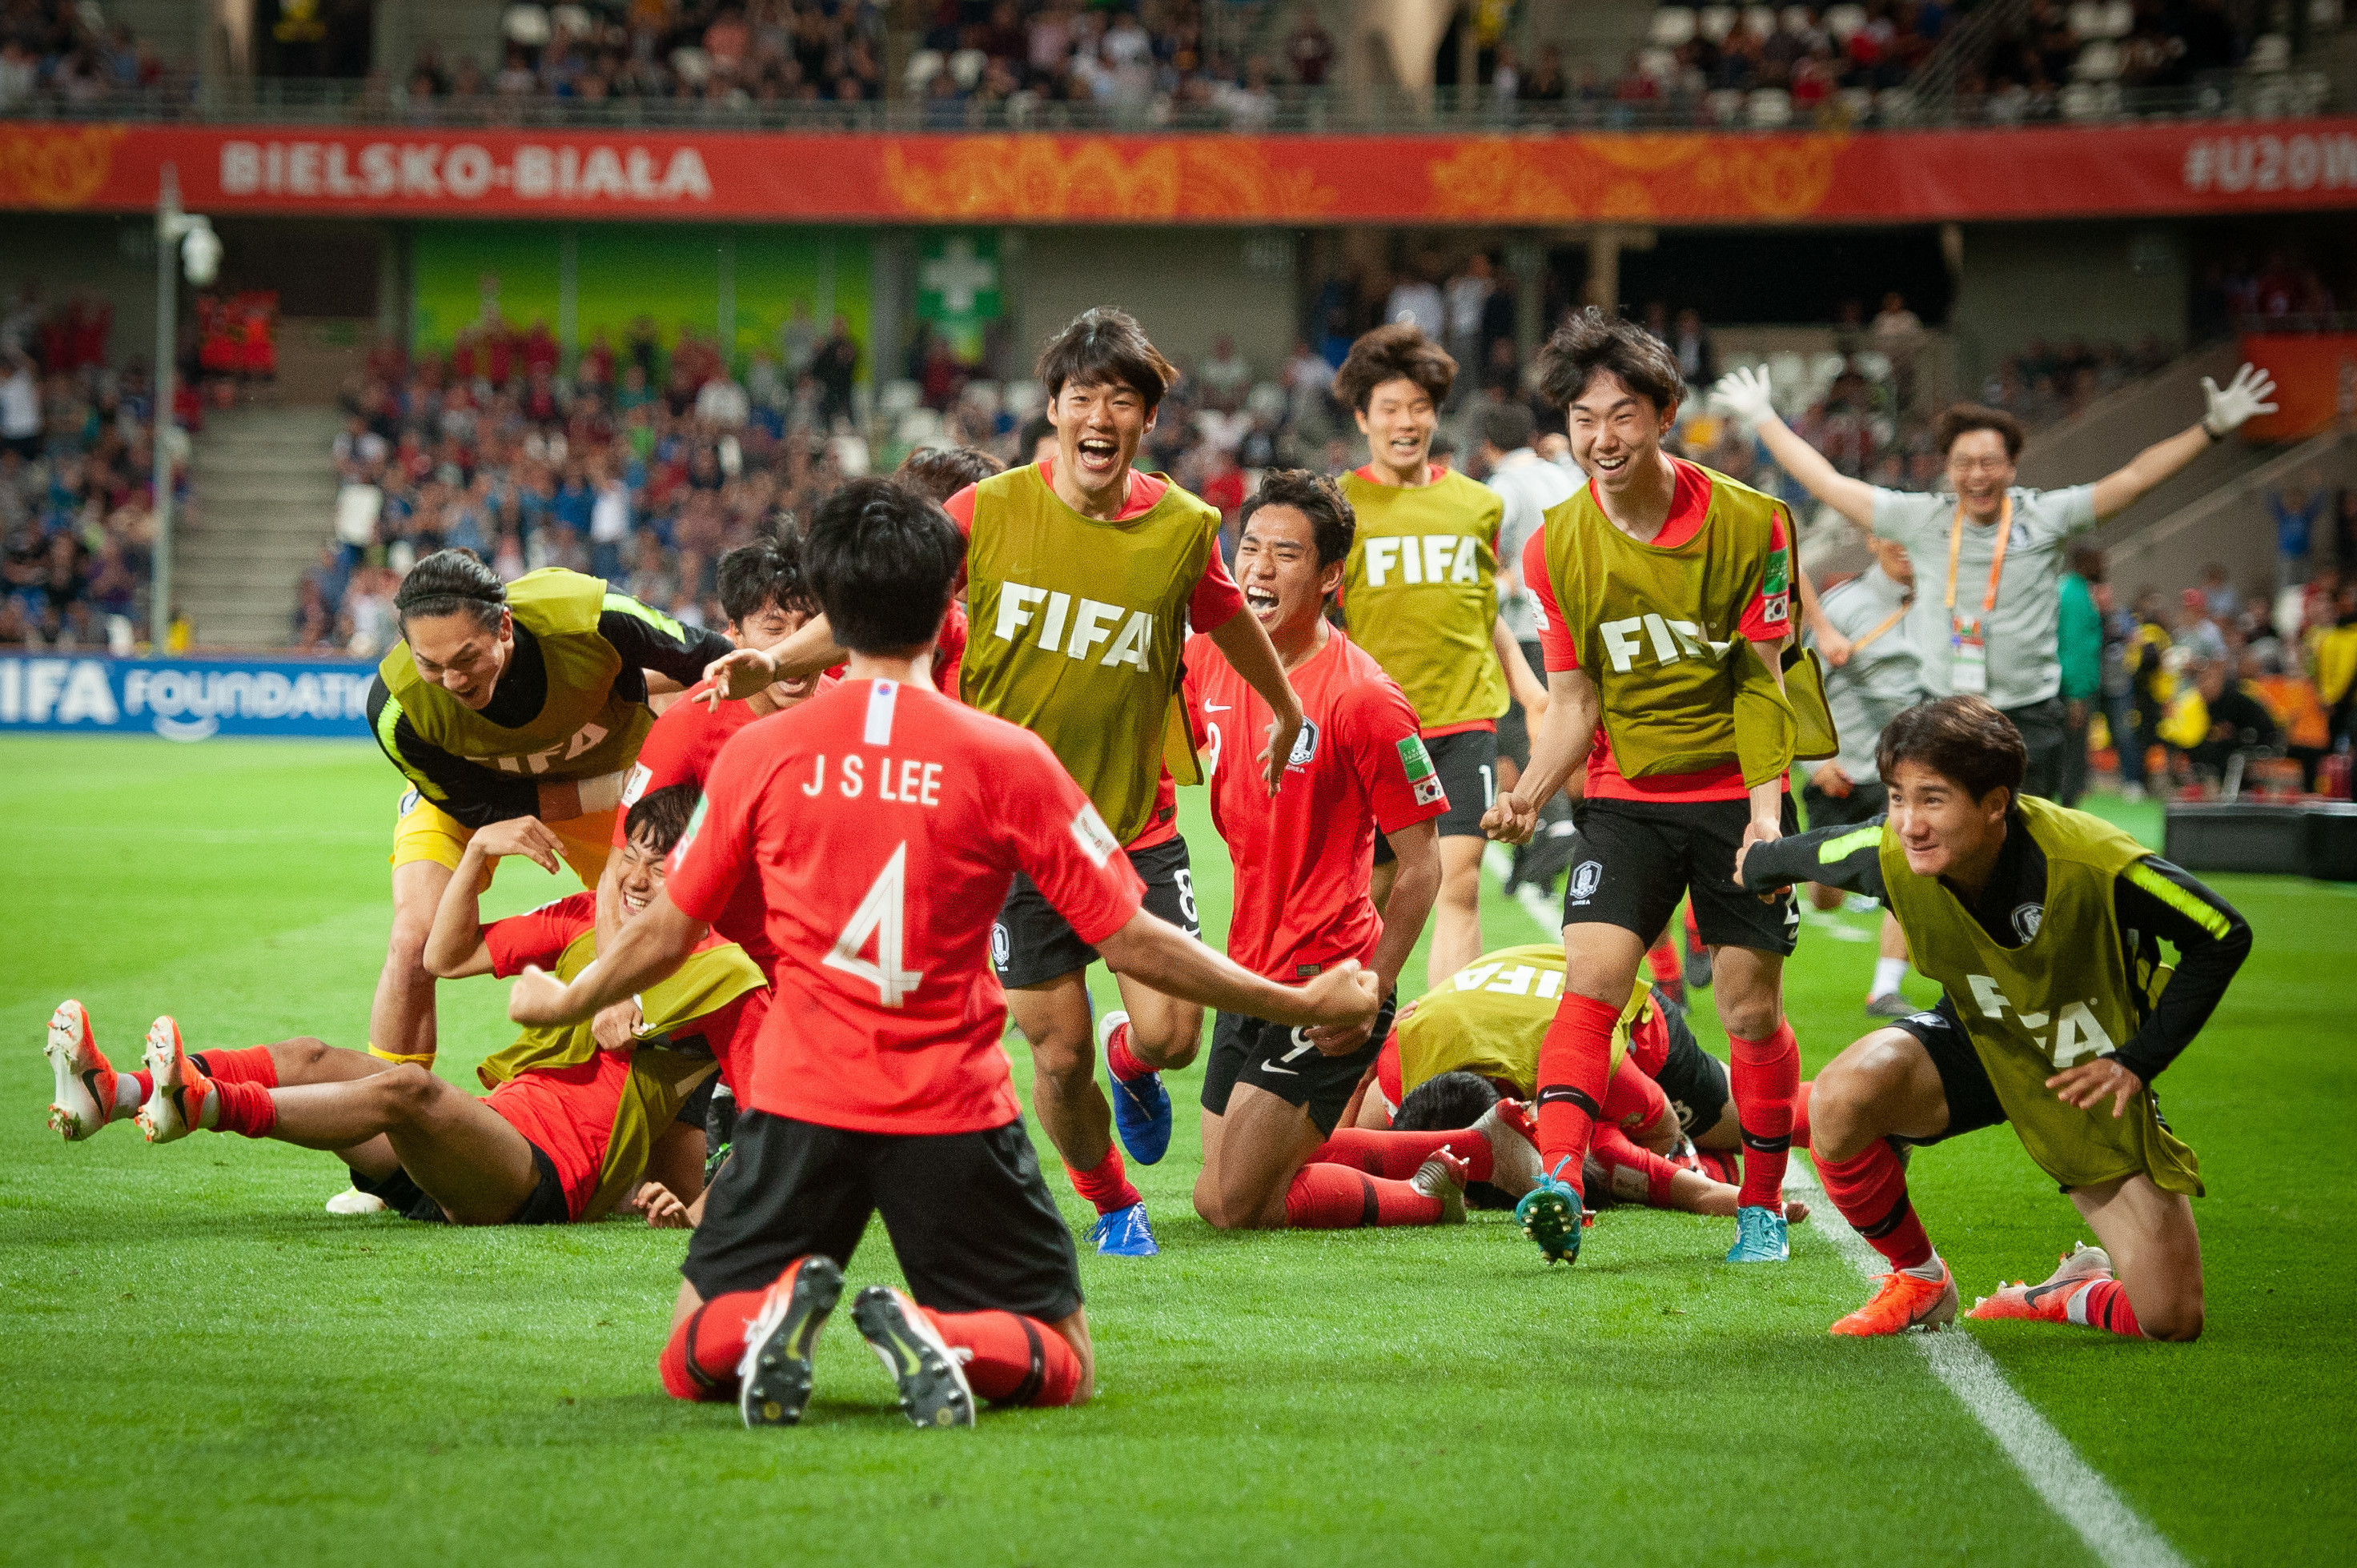 Korea Południowa U-20 to nie tylko jeden zawodnik